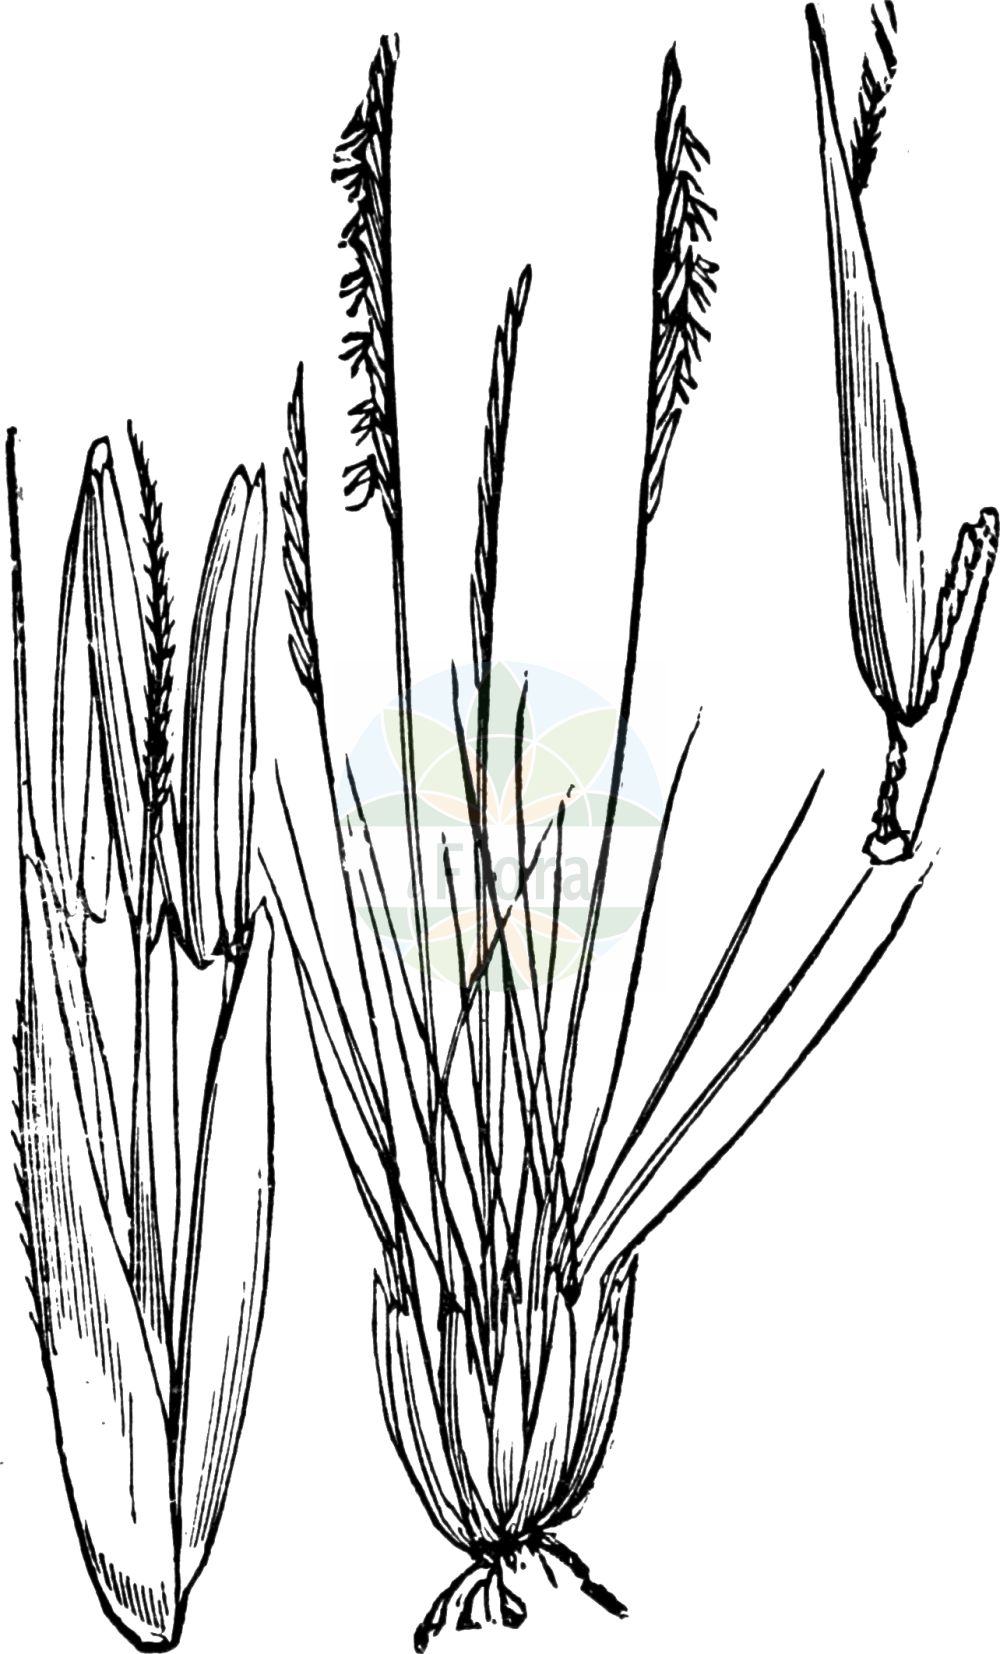 Historische Abbildung von Nardus stricta (Borstgras - Mat-grass). Das Bild zeigt Blatt, Bluete, Frucht und Same. ---- Historical Drawing of Nardus stricta (Borstgras - Mat-grass). The image is showing leaf, flower, fruit and seed.(Nardus stricta,Borstgras,Mat-grass,Nardus stricta,Natschia stricta,Borstgras,Buerstling,Mat-grass,Nardus,Borstgras,Matgrass,Poaceae,Süßgräser,Grass family,Blatt,Bluete,Frucht,Same,leaf,flower,fruit,seed,Fitch et al. (1880))